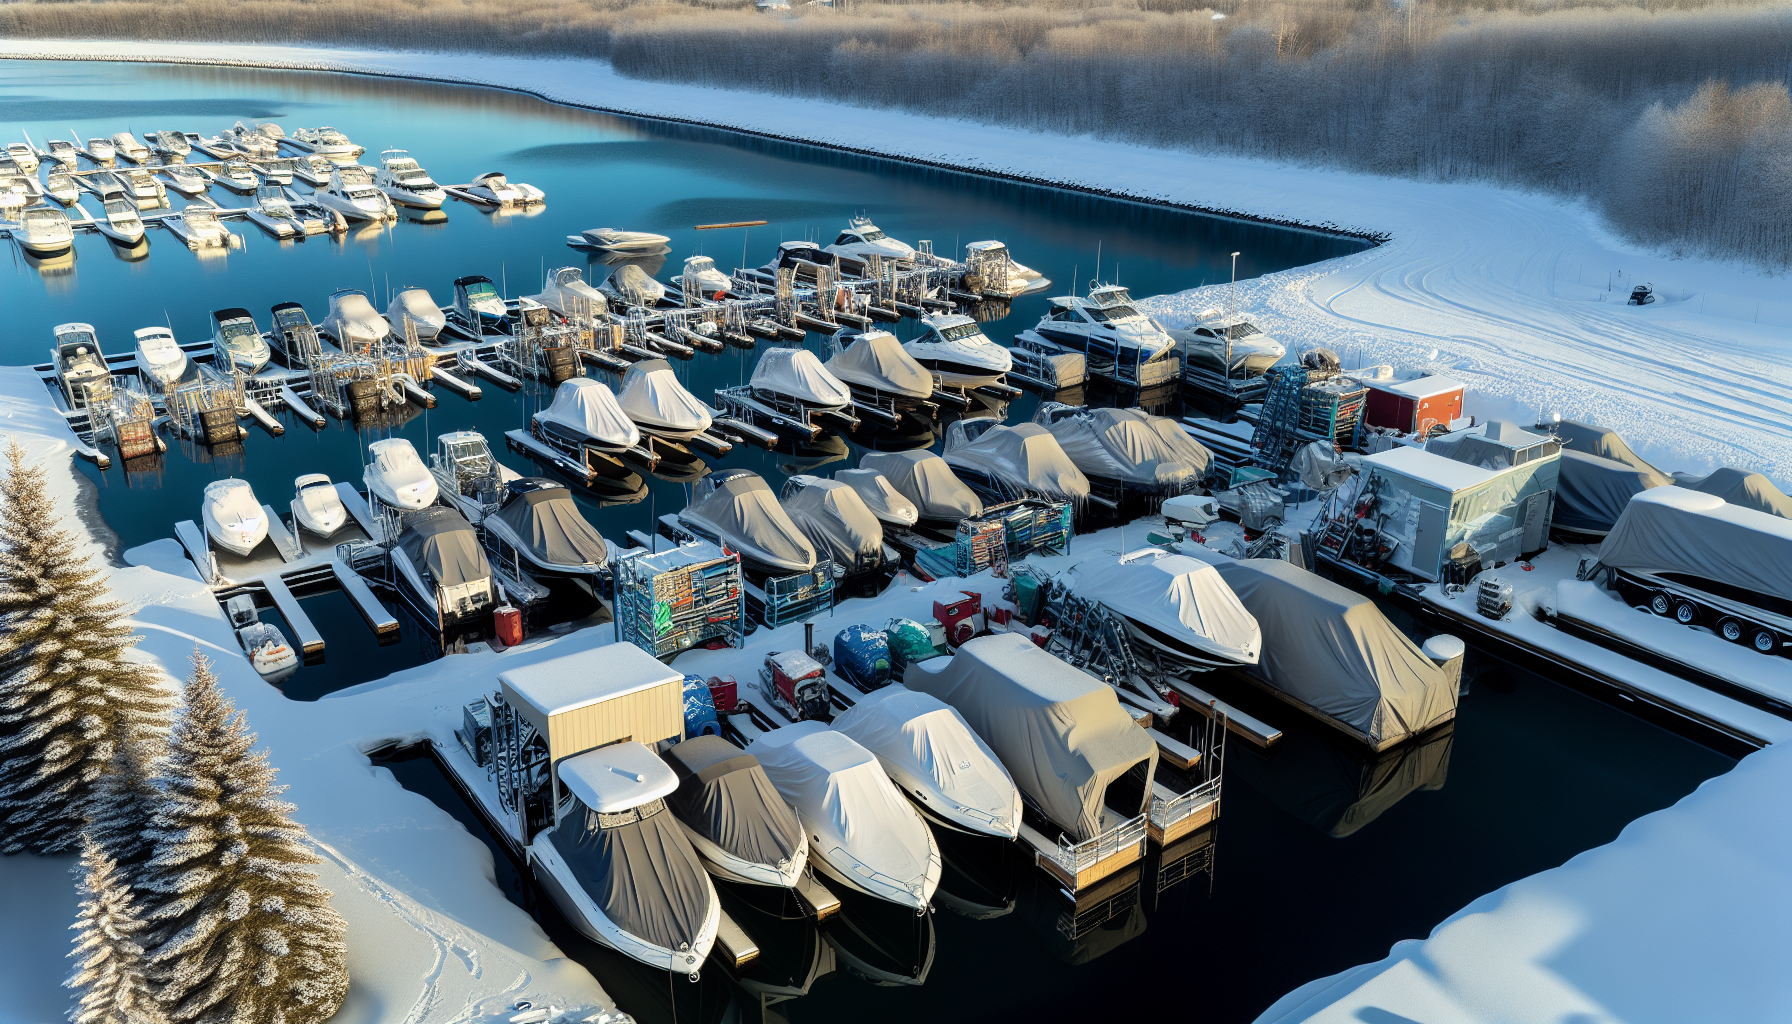 Winter Boat Storage at Marina